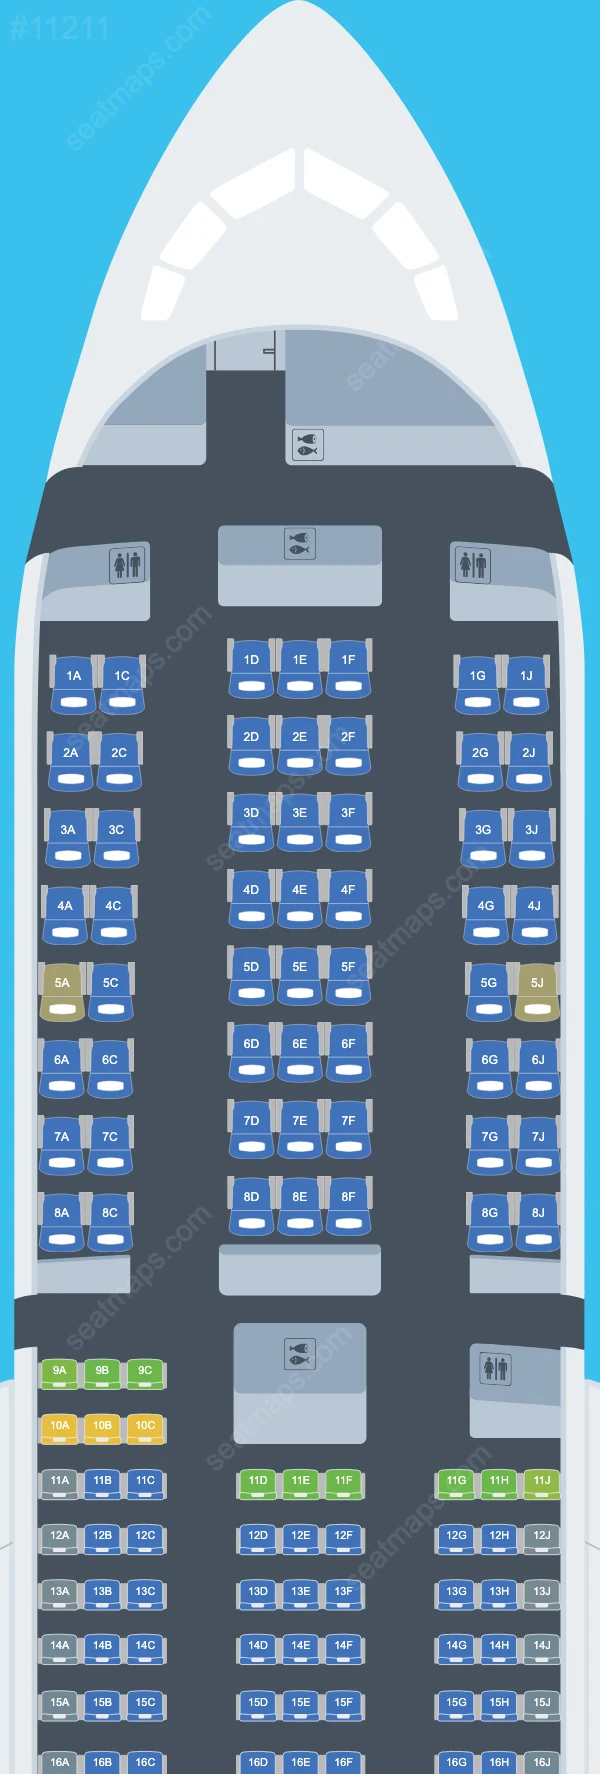 Air Premia Boeing 787 Seat Maps 787-9